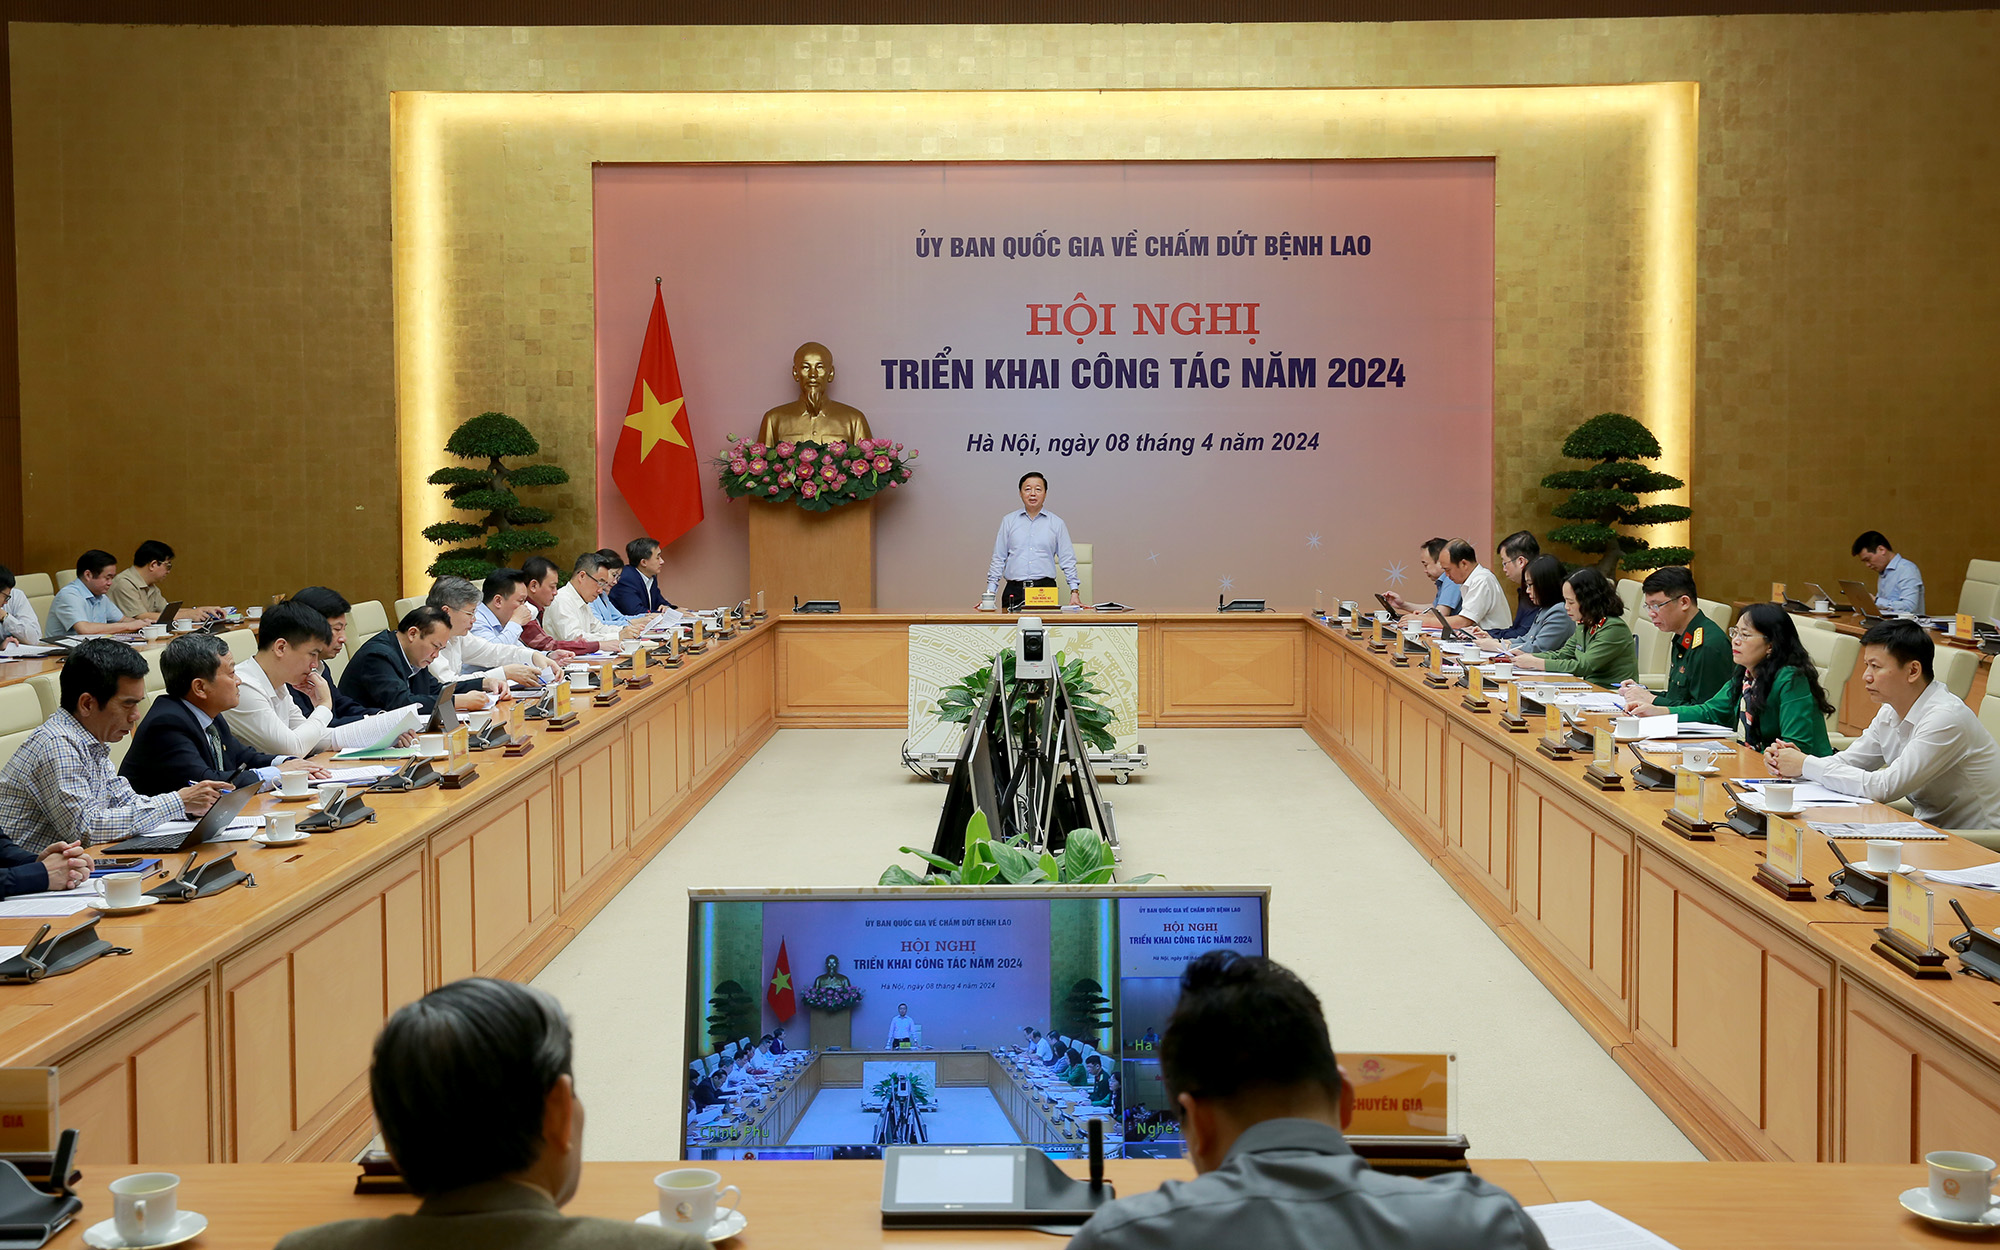 Phó Thủ tướng Trần Hồng Hà chỉ đạo loạt biện pháp để chấm dứt bệnh lao vào năm 2030